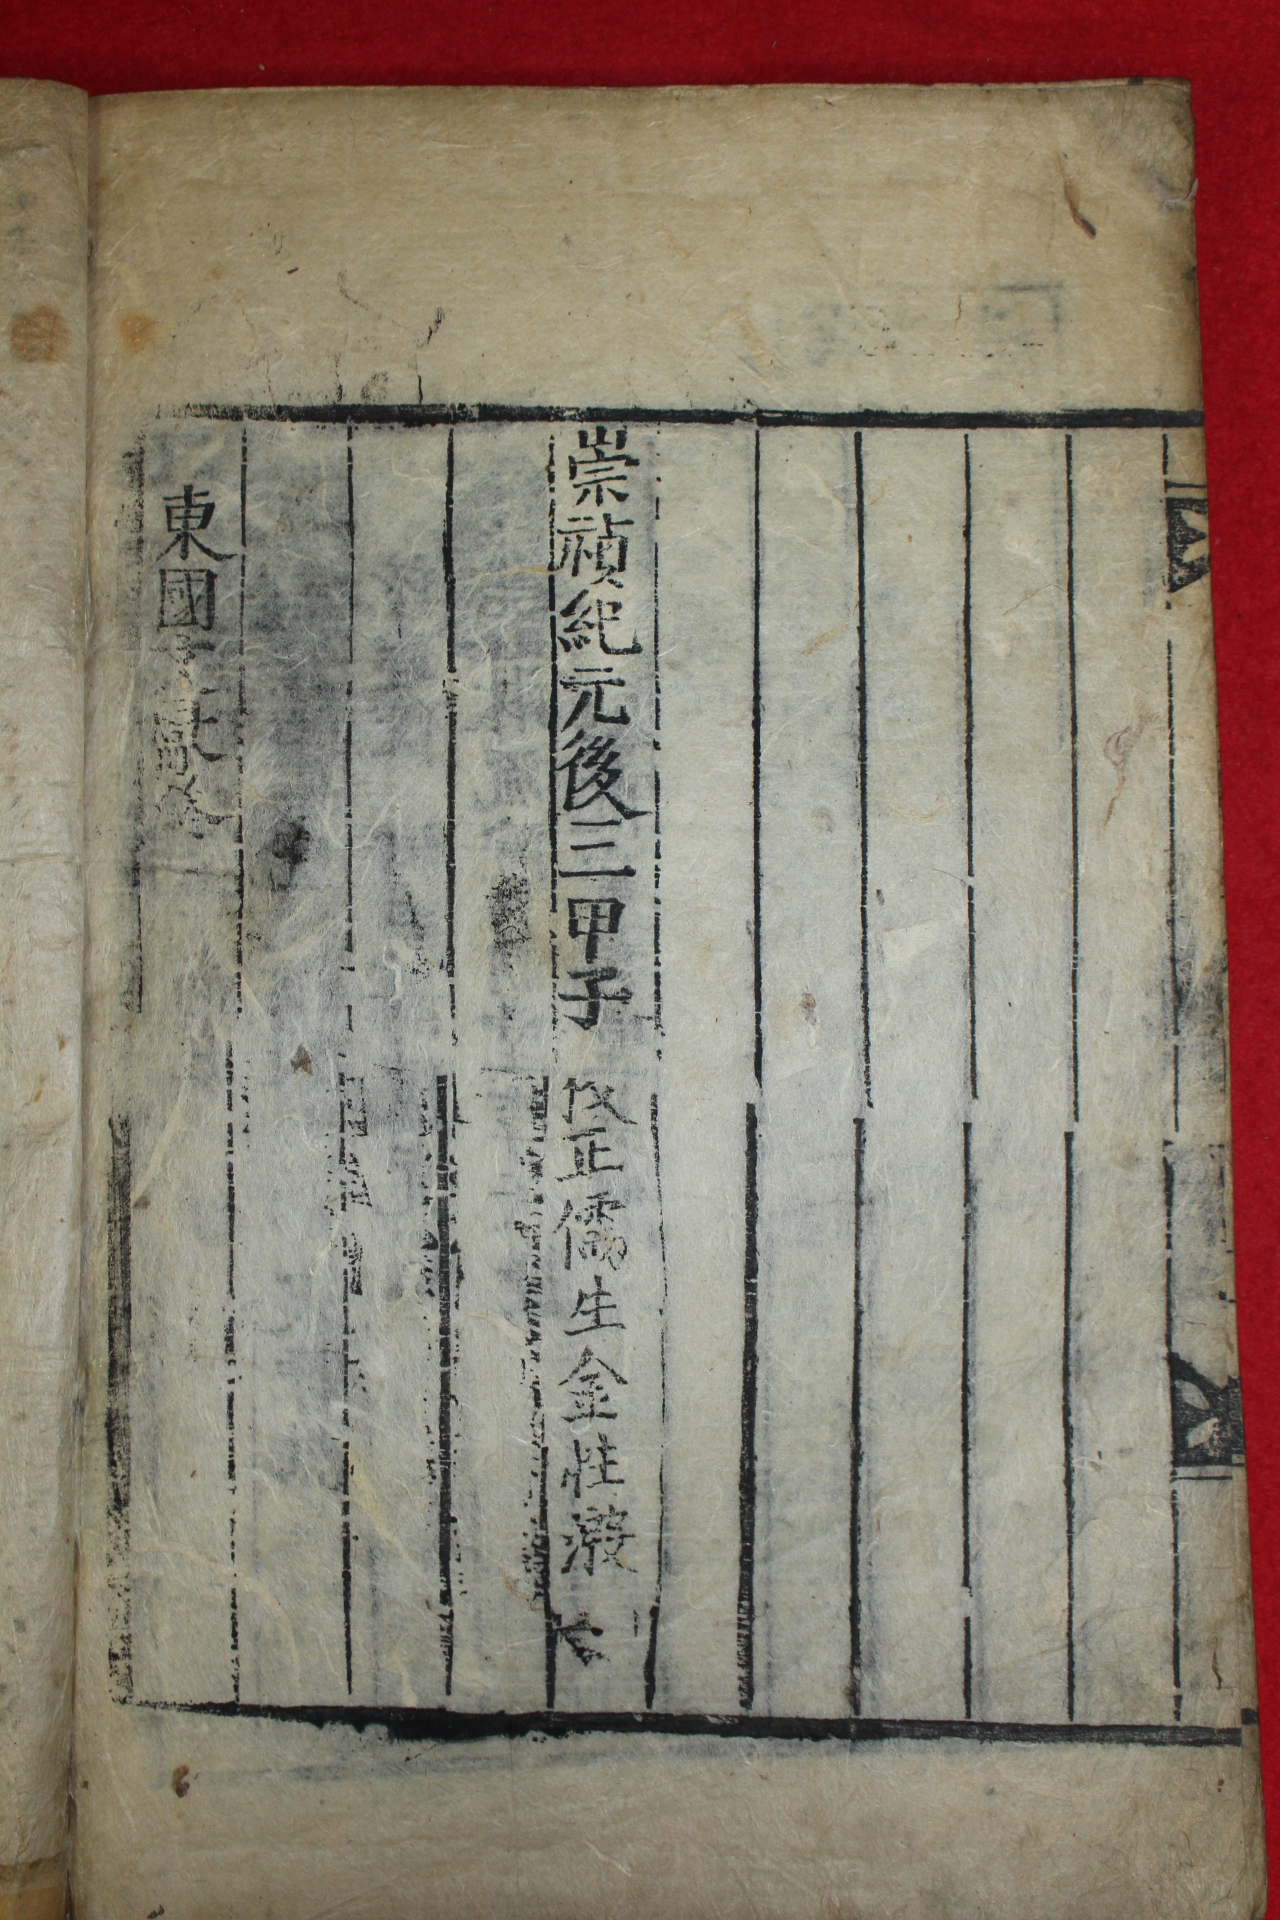 1804년(崇禎紀元後三甲子) 목활자본 동국문헌록(東國文獻錄)3책완질